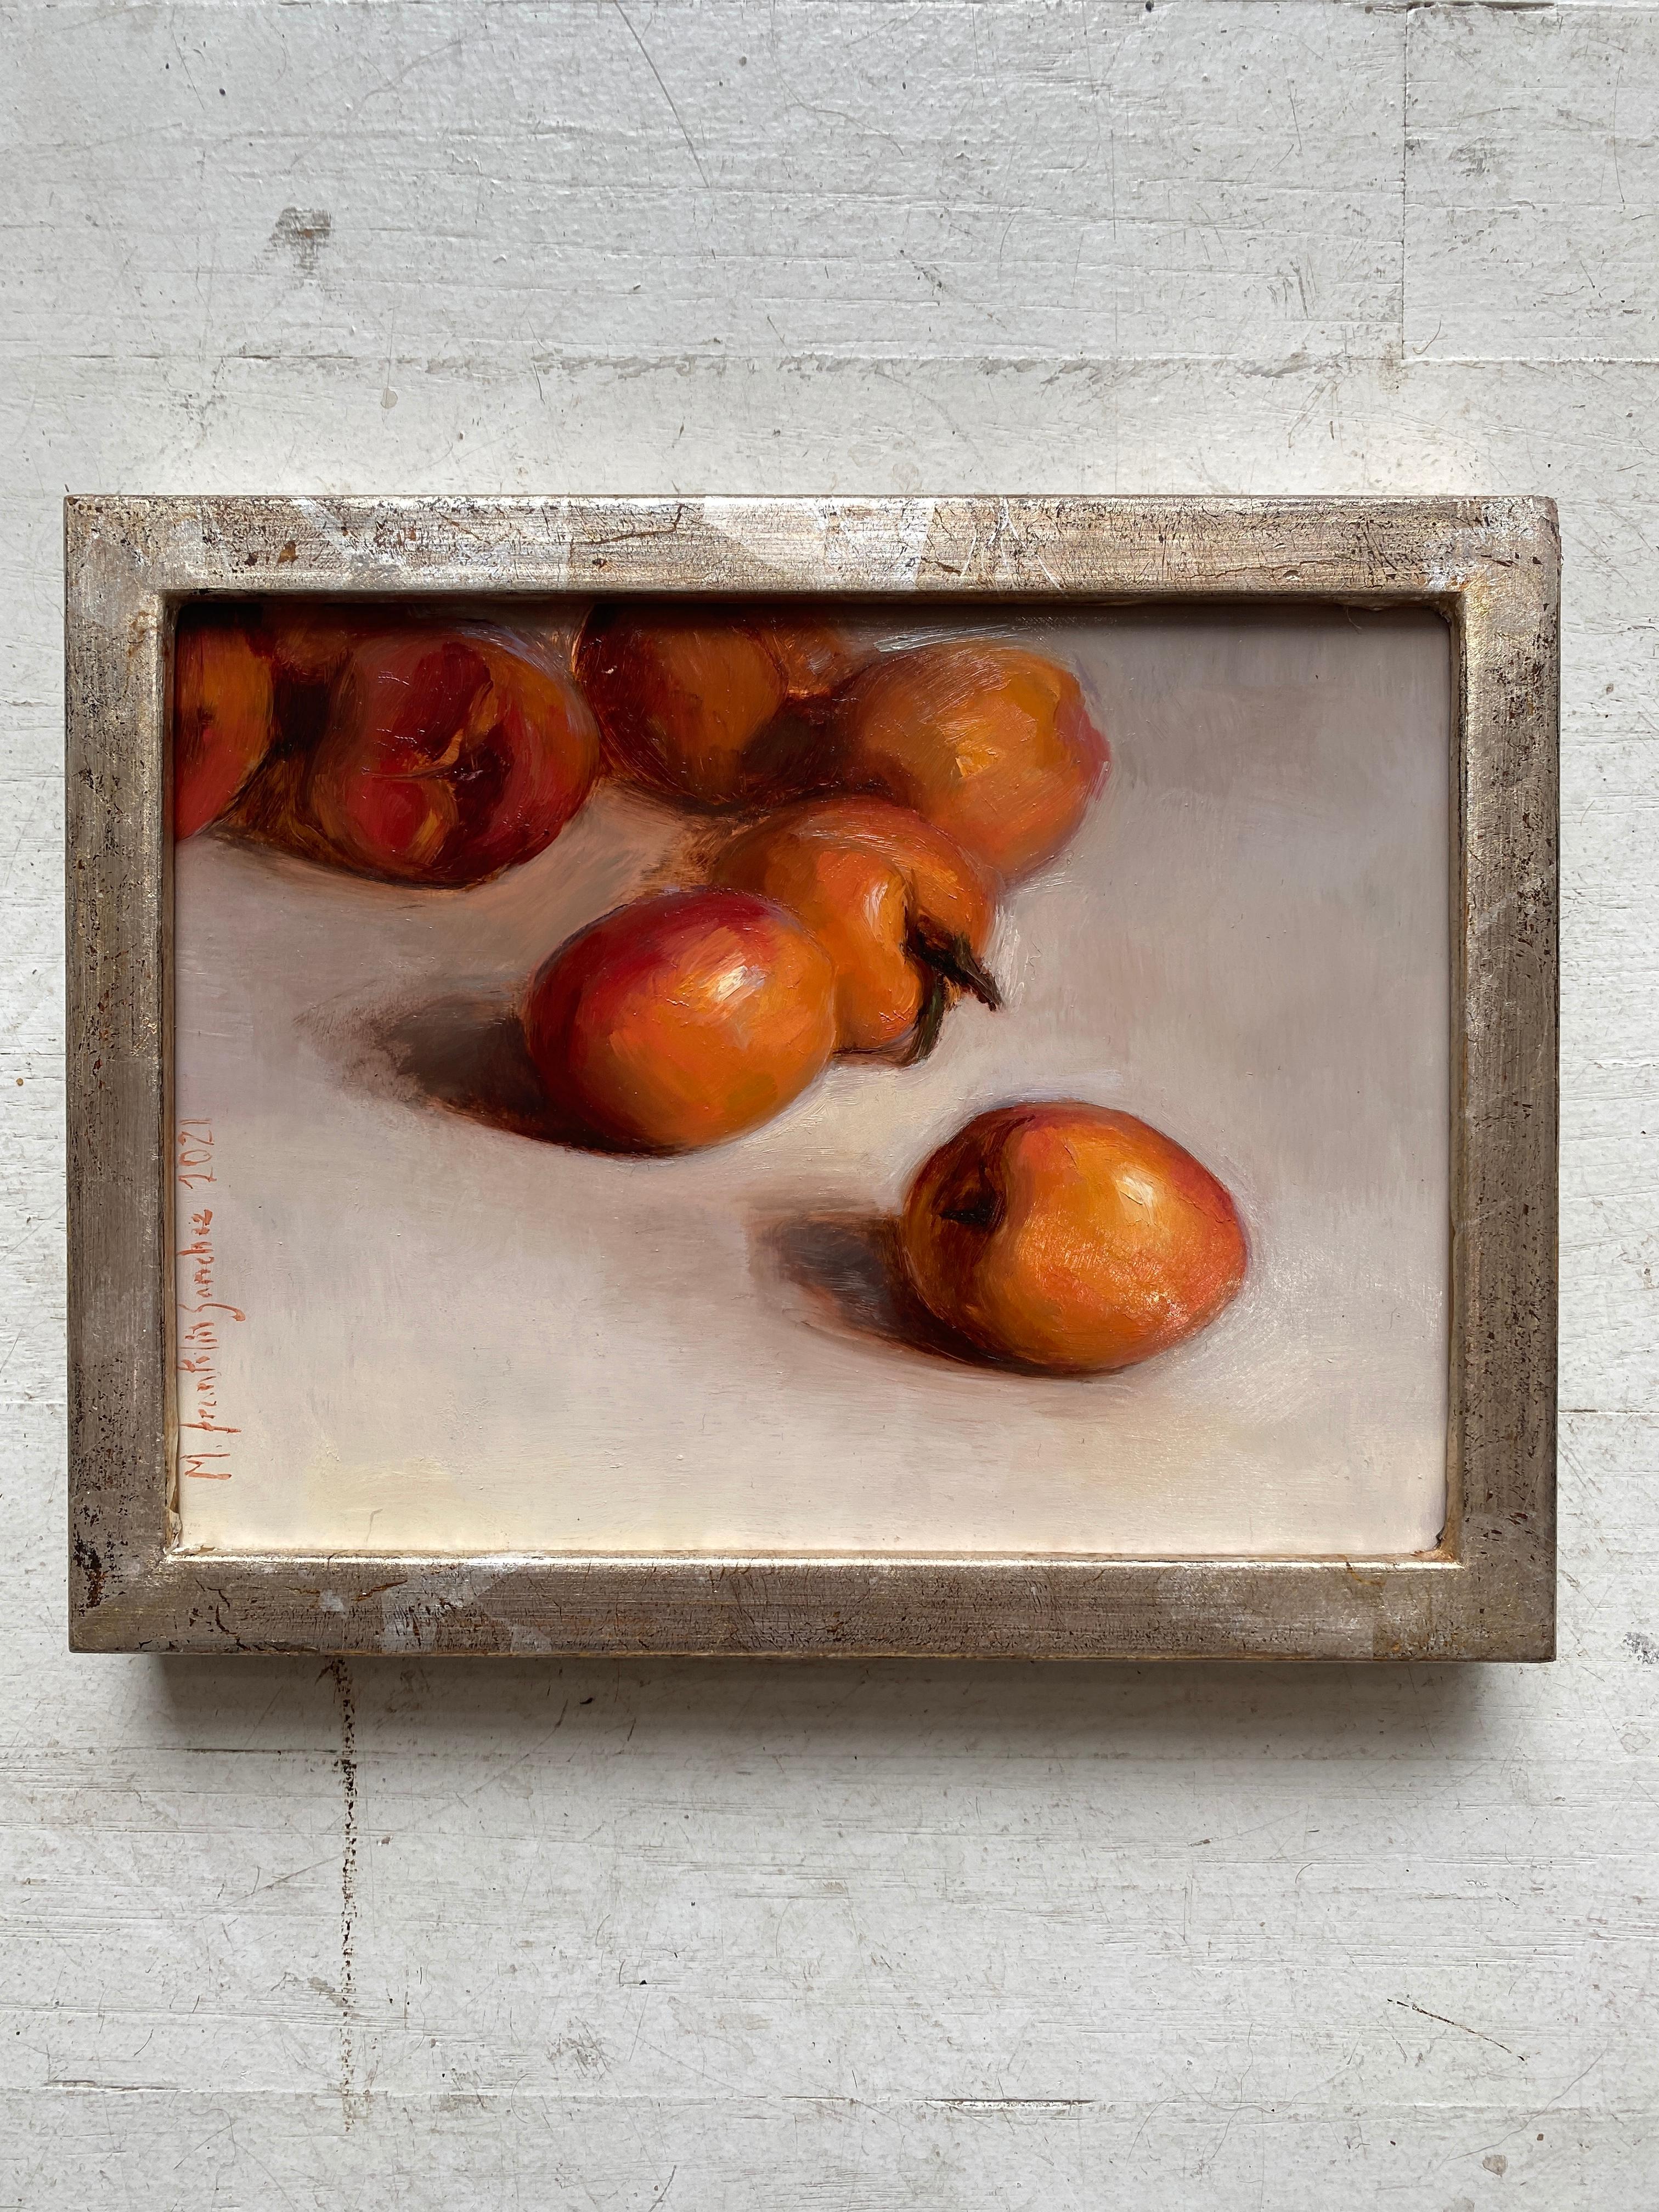 Apricots - Painting by Melissa Franklin Sanchez